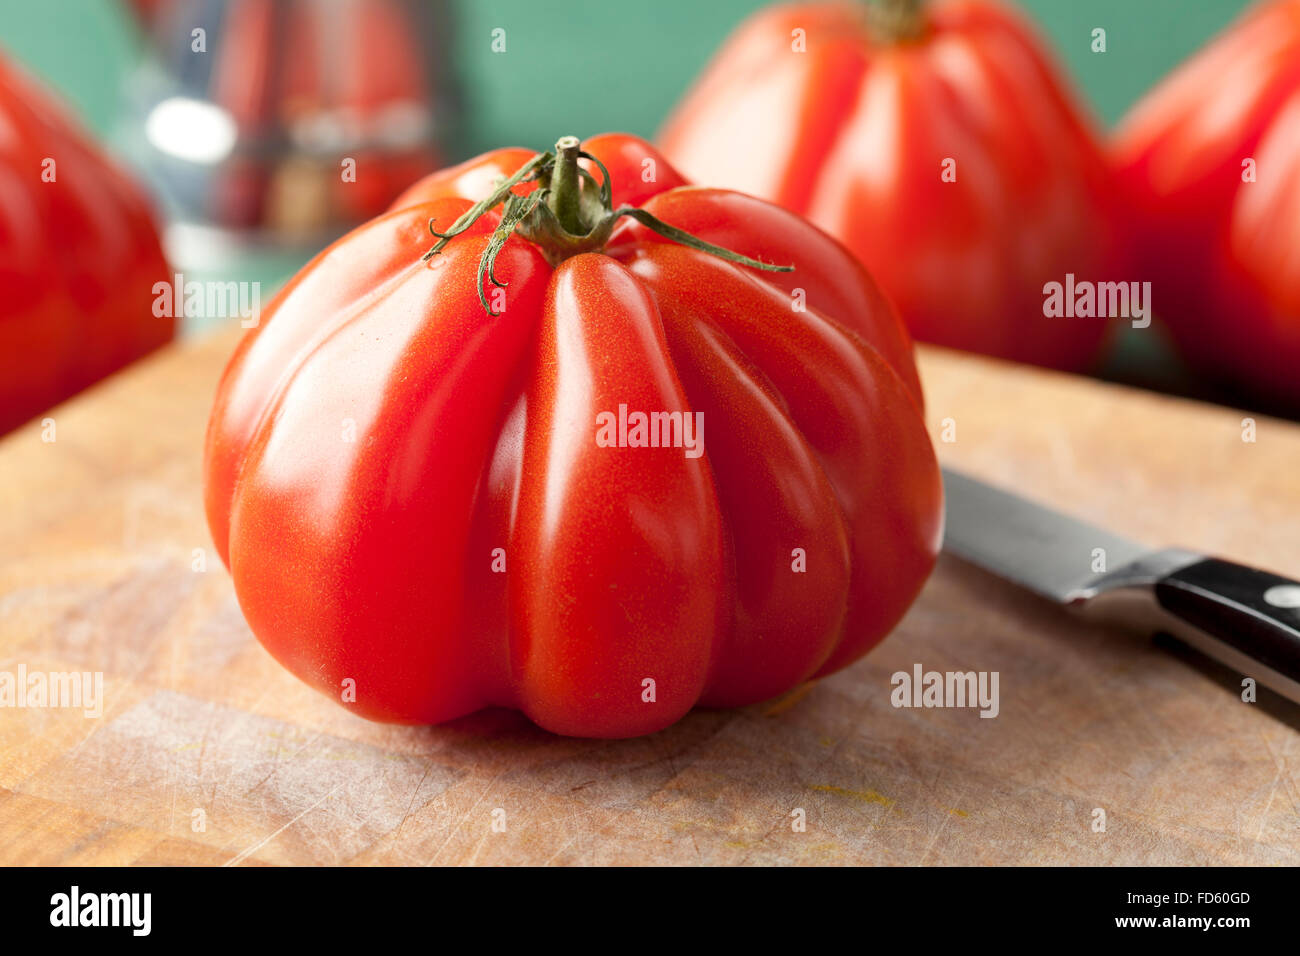 Entiers et frais, tomate Coeur de boeuf Banque D'Images